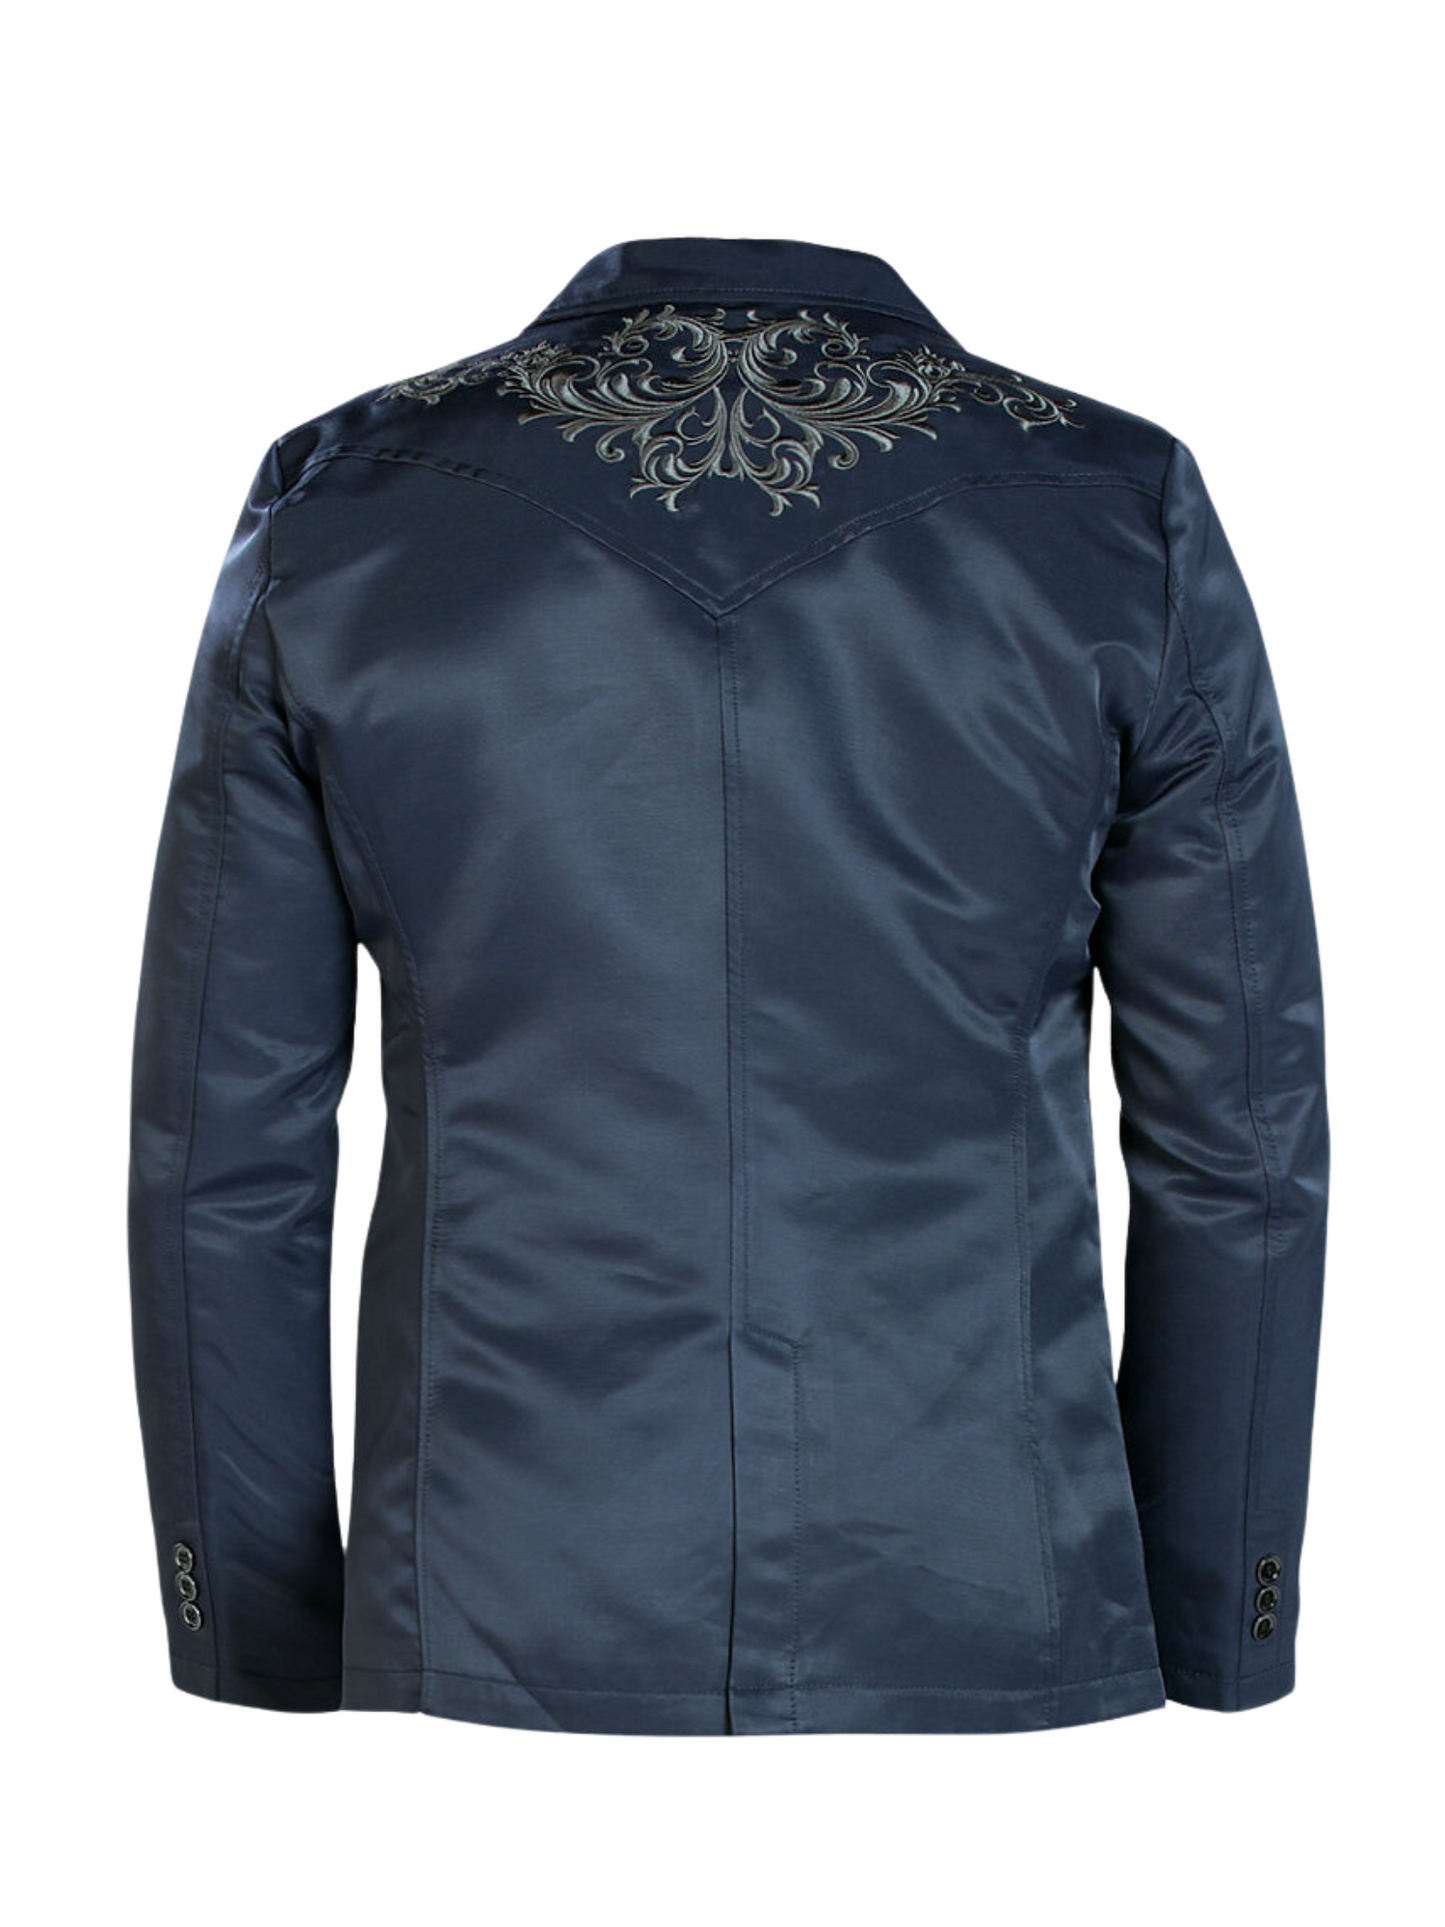 Embroidered Denim Jacket for Men 'Montero' - ID: 2173 Western Blazer Montero